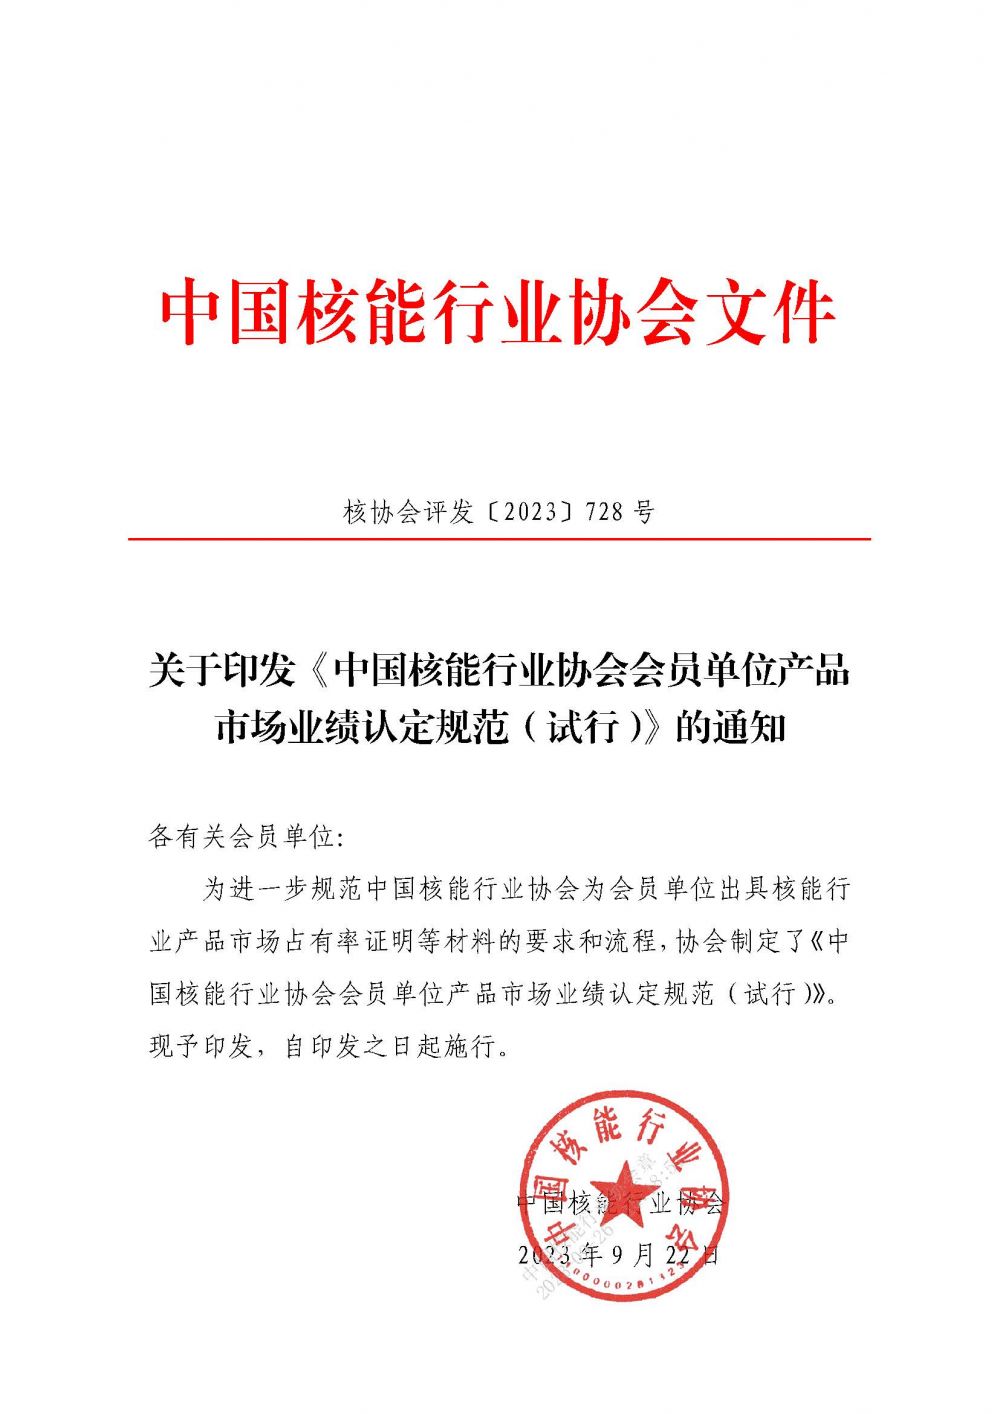 关于印发《中国核能行业协会会员单位产品市场业绩认定规范（试行）》的通知4.29_页面_1.jpg